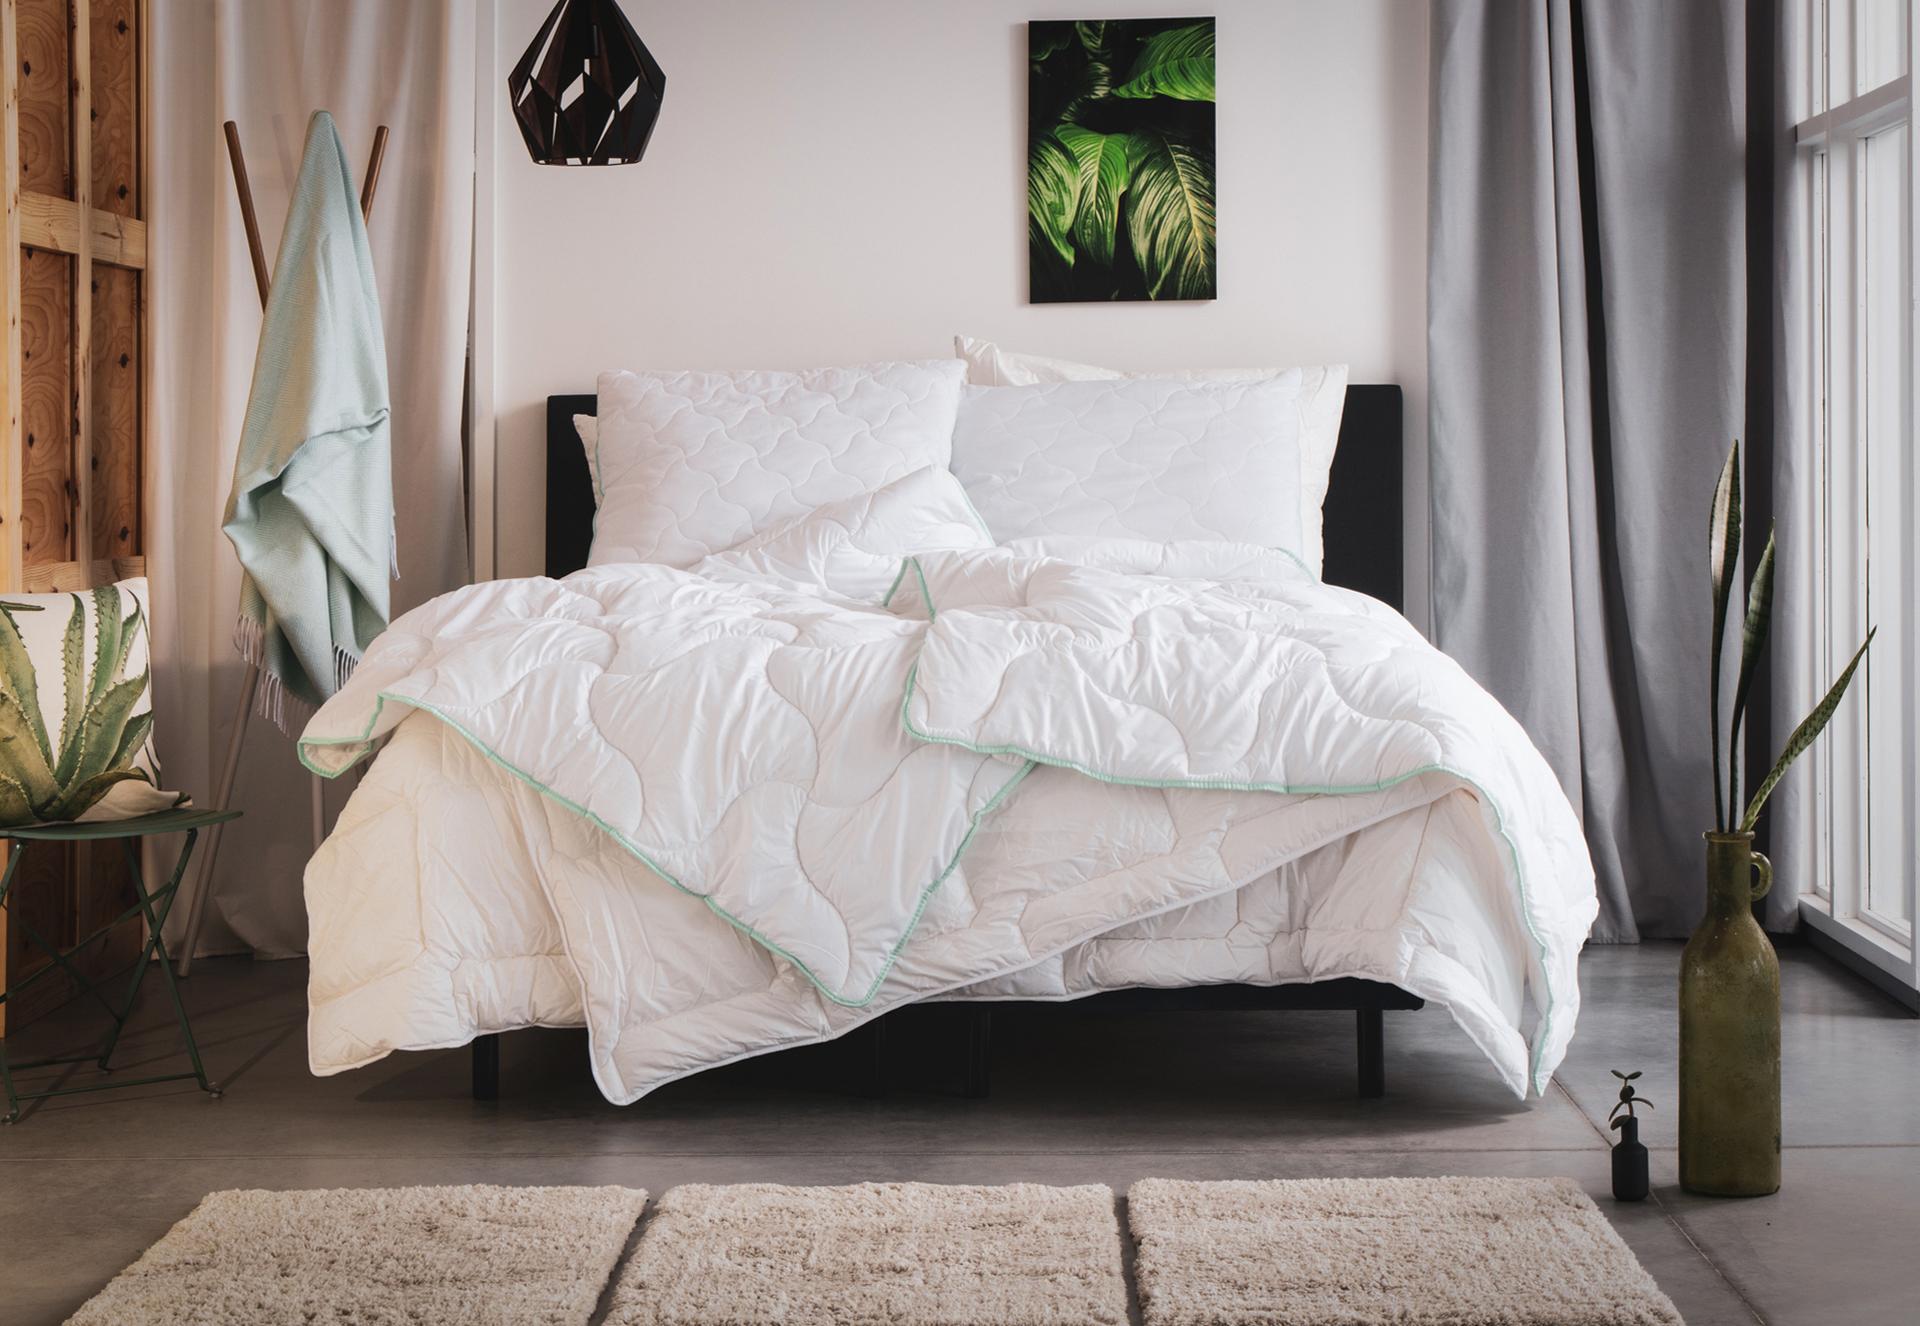 Poduszka Aloe Vera 50x60 w wizualizacji na łóżku